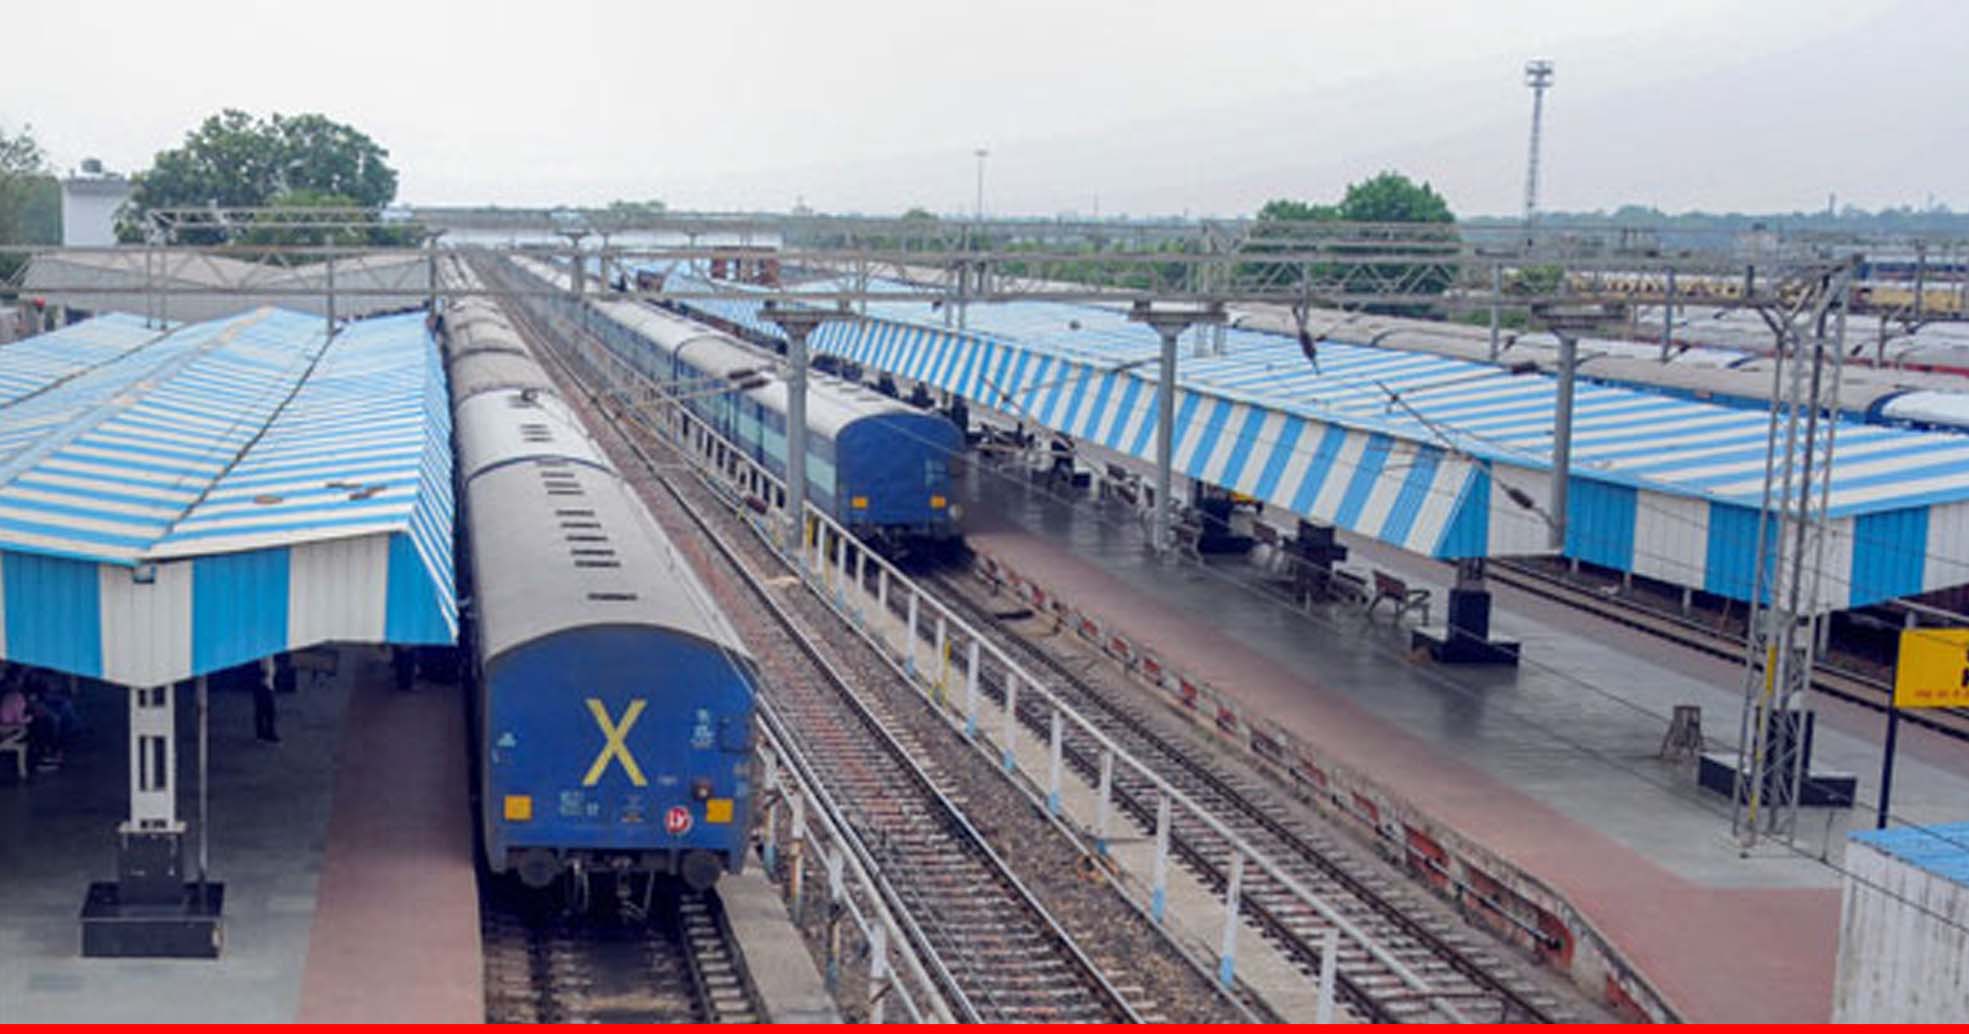 यात्रियों की संख्या में कमी के कारण रेलवे ने 17 मई तक कैंसिल कर दी 31 ट्रेनें, देखें पूरी लिस्ट